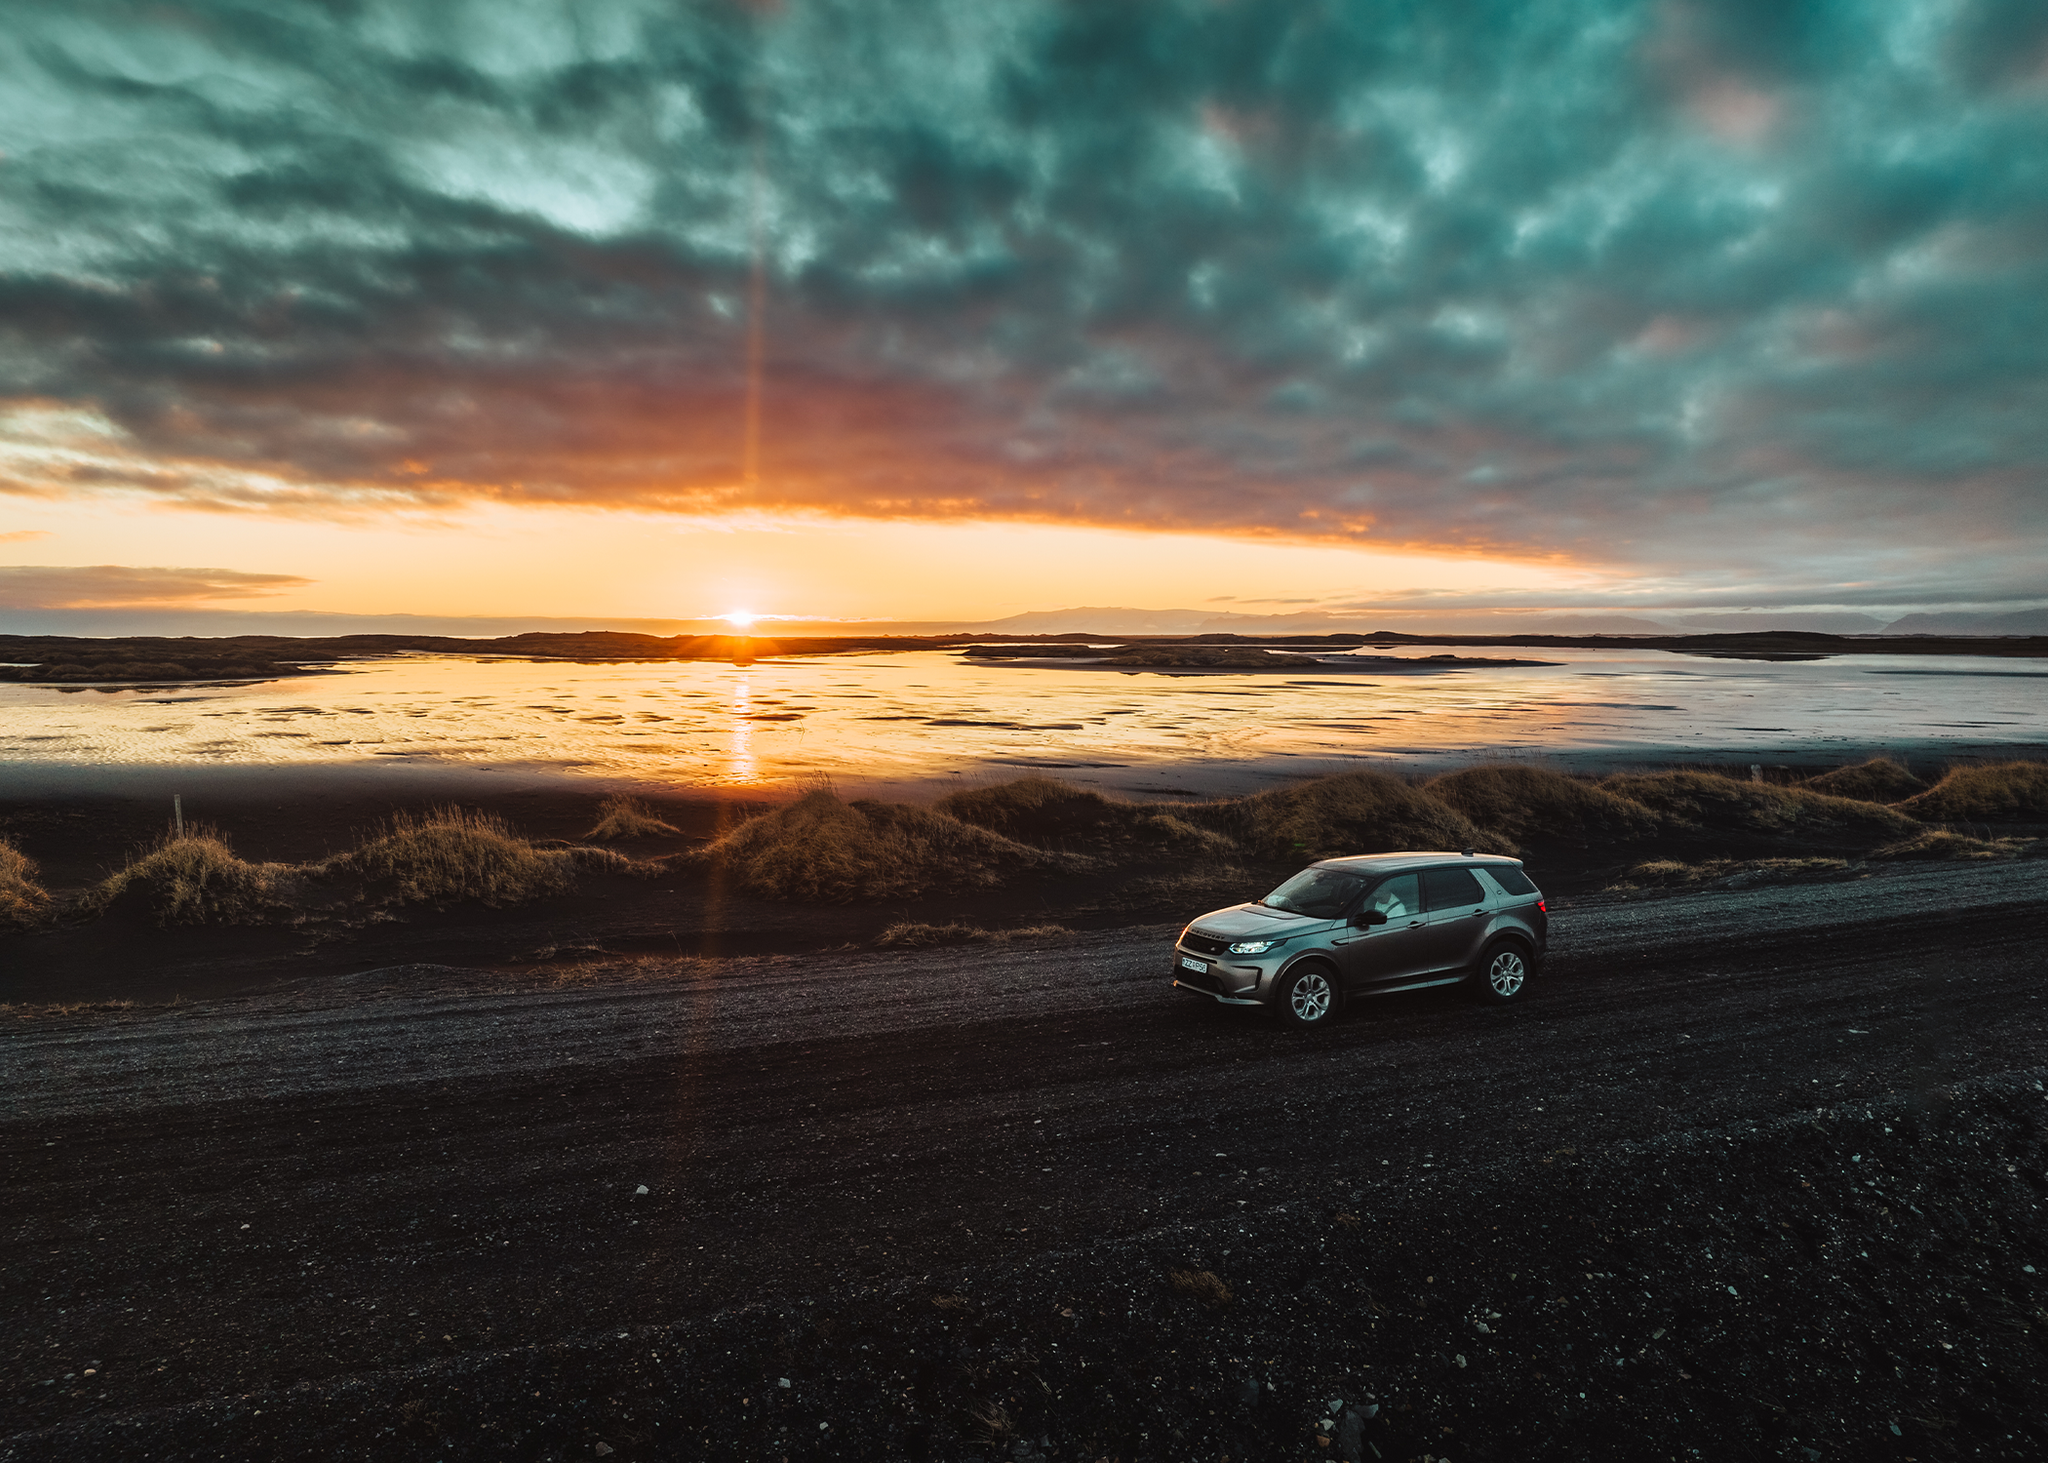 Land Rover Discovery Sport auf der Straße geparkt, während die Sonne untergeht